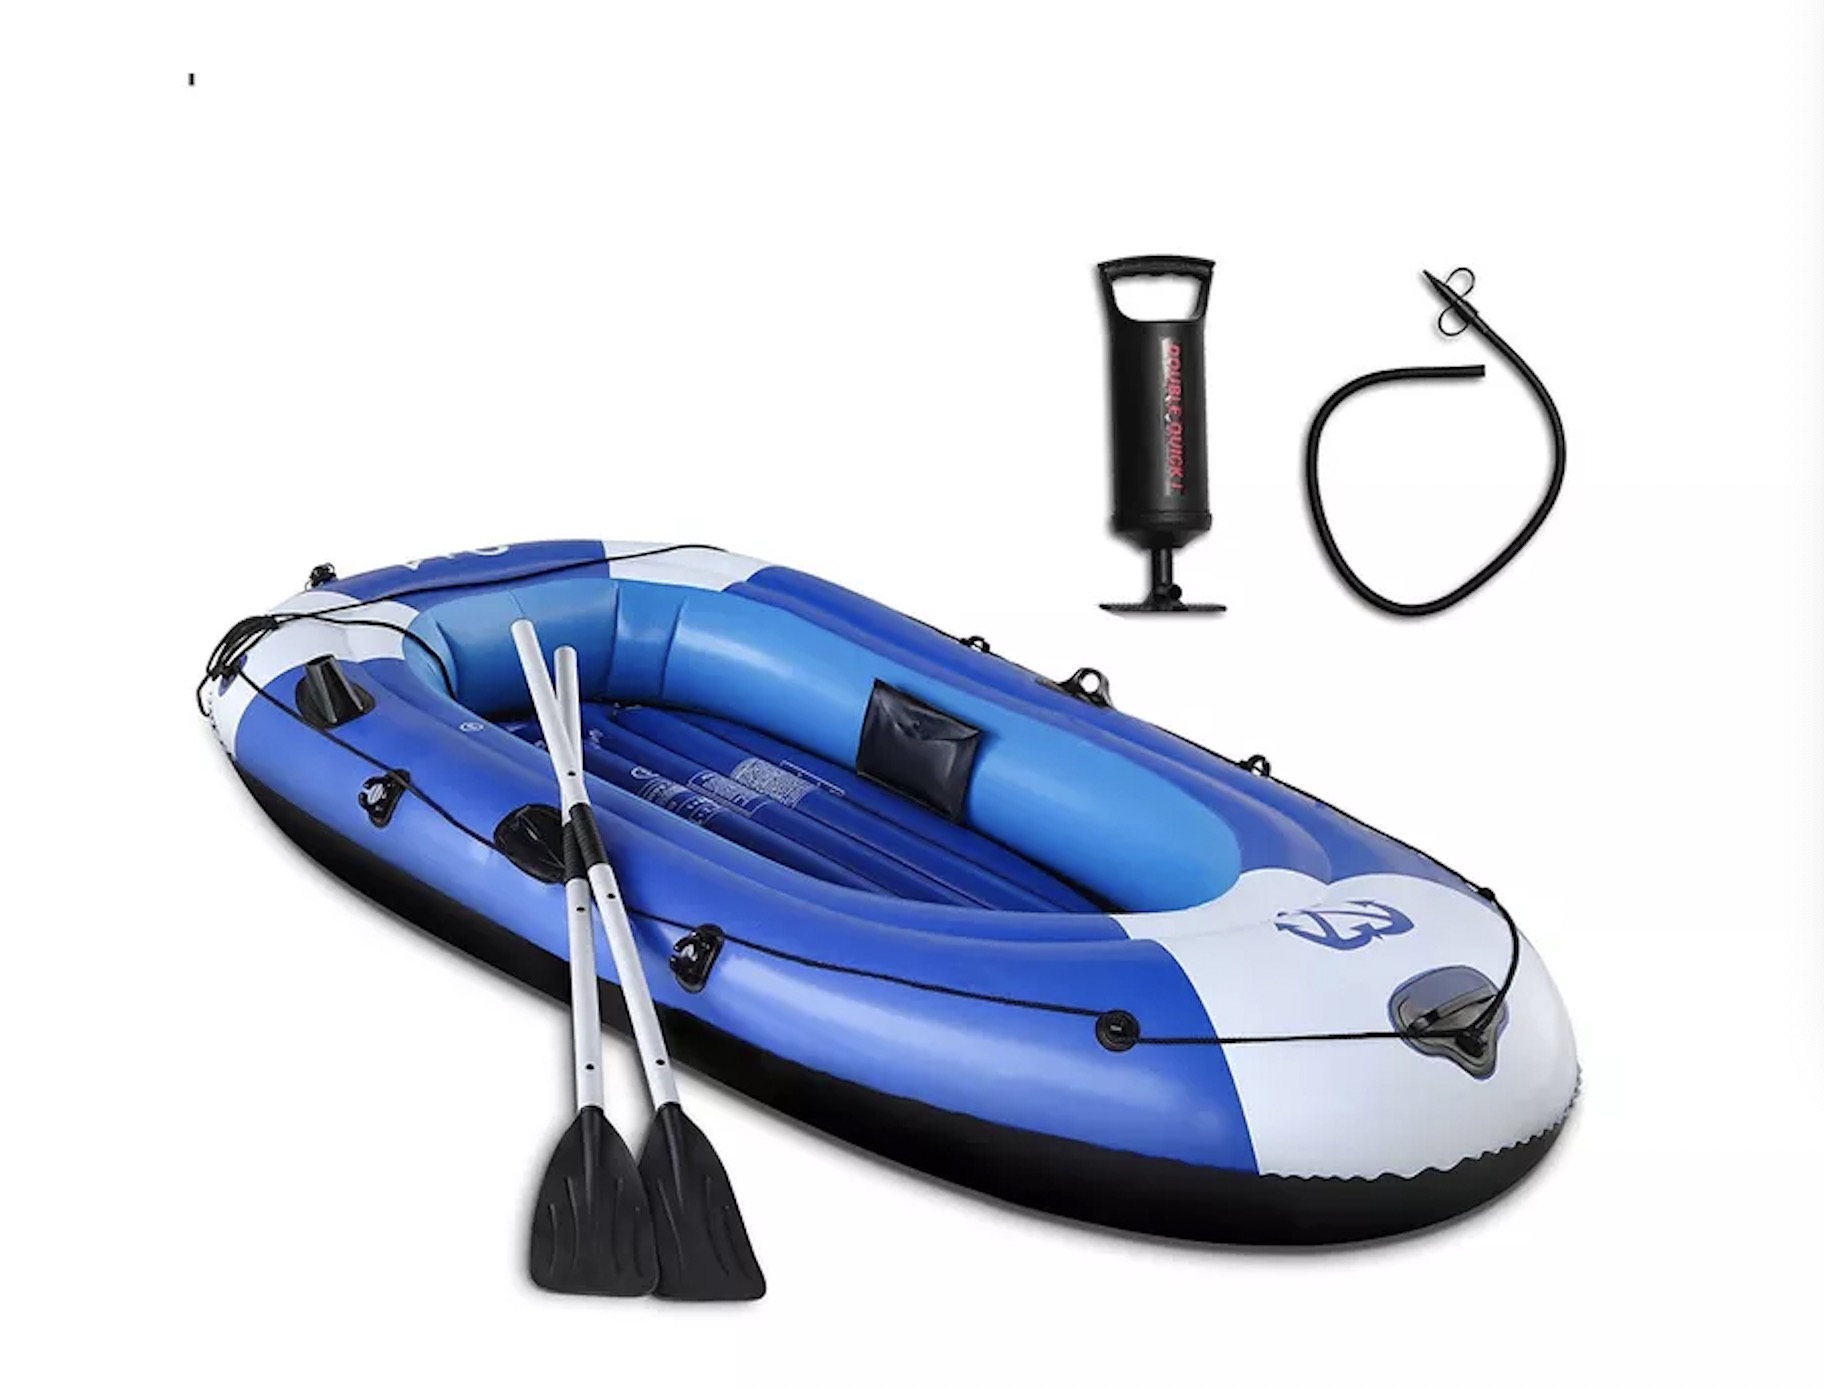 Amazon Hot Selling Drop Stitch PVC verdicken aufblasbares Ruder-Luftboden-Angelboot mit Paddel und Pumpe für Erwachsene